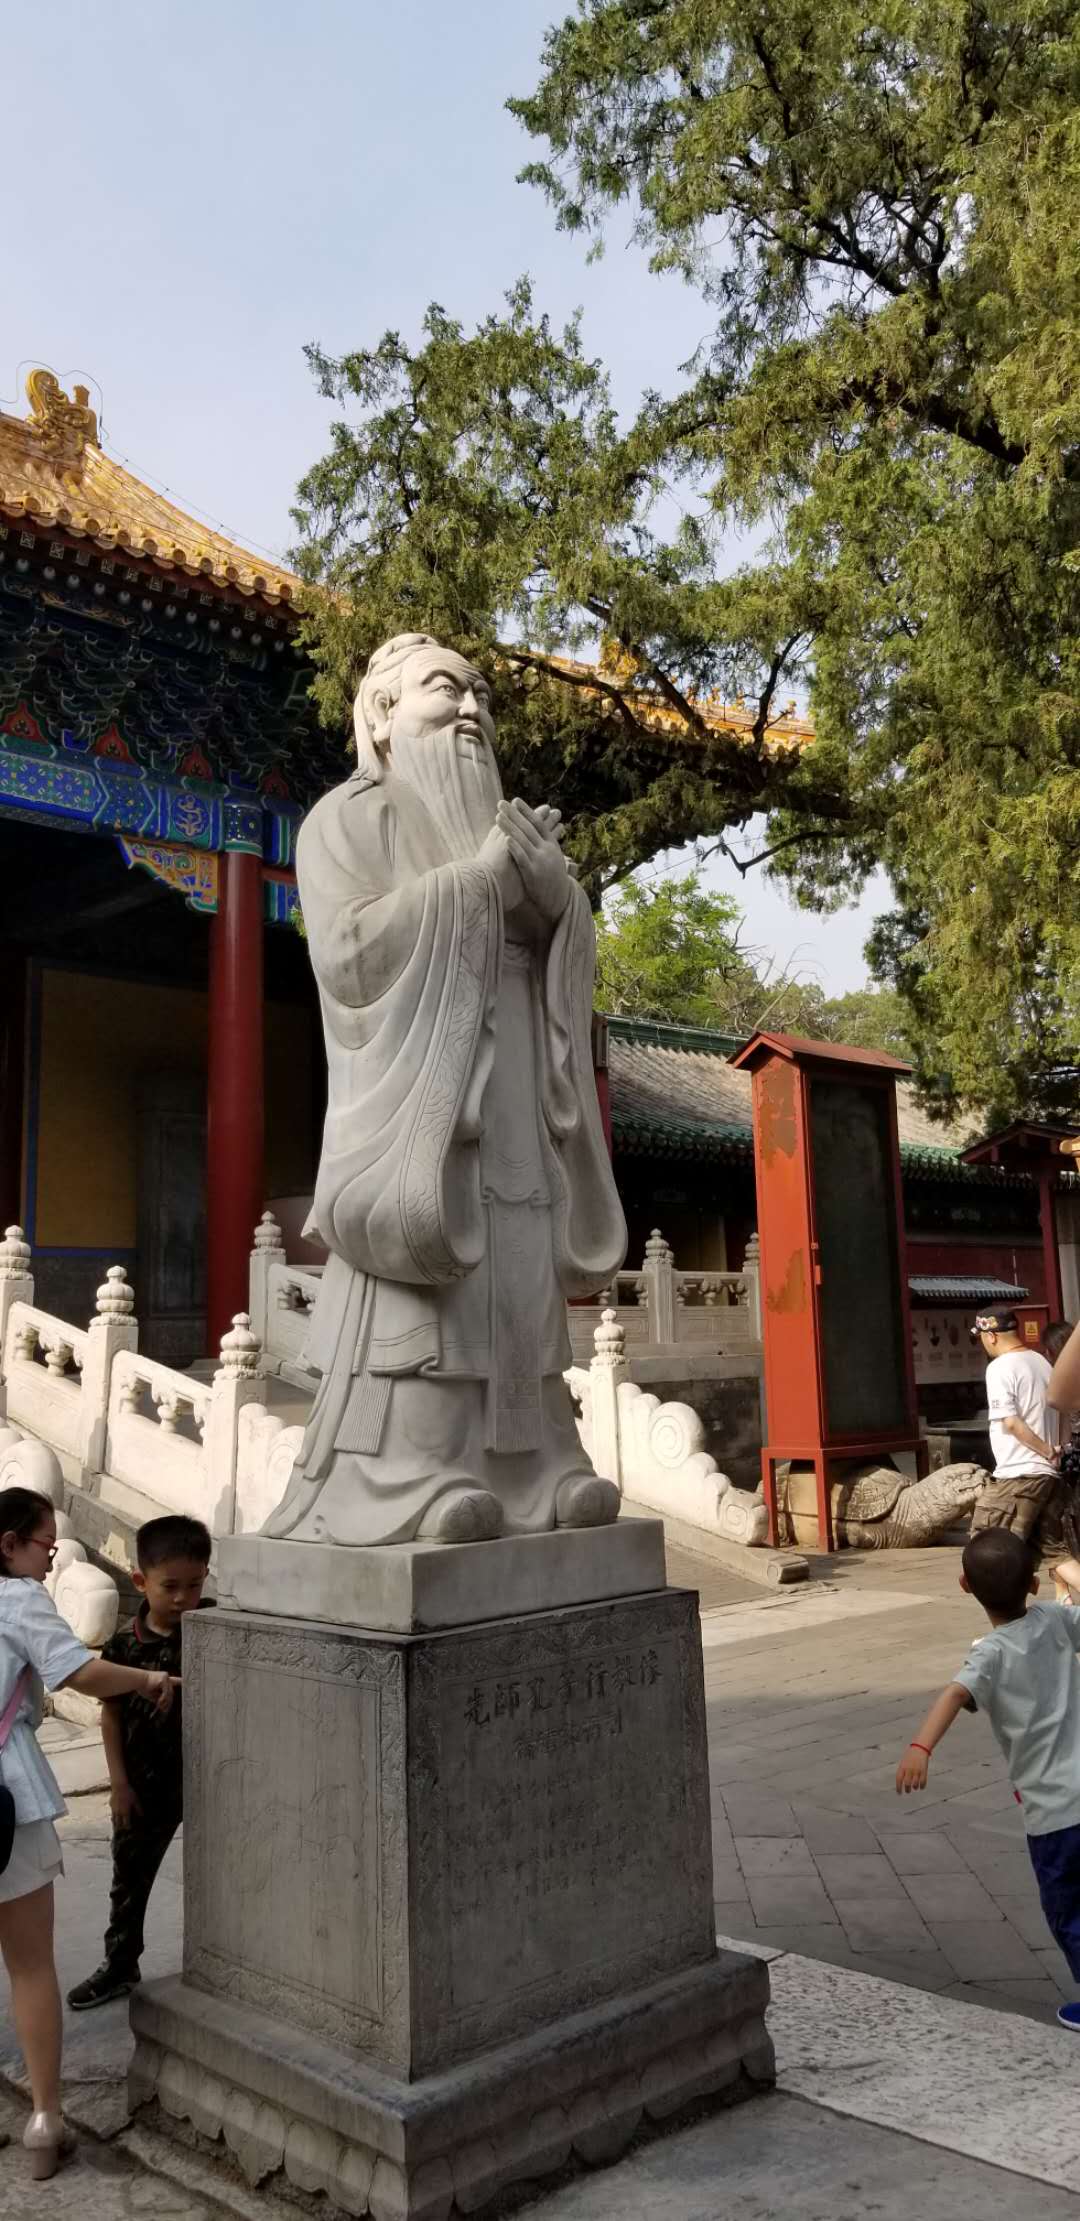 A statute of Confucius at the Confucius Temple